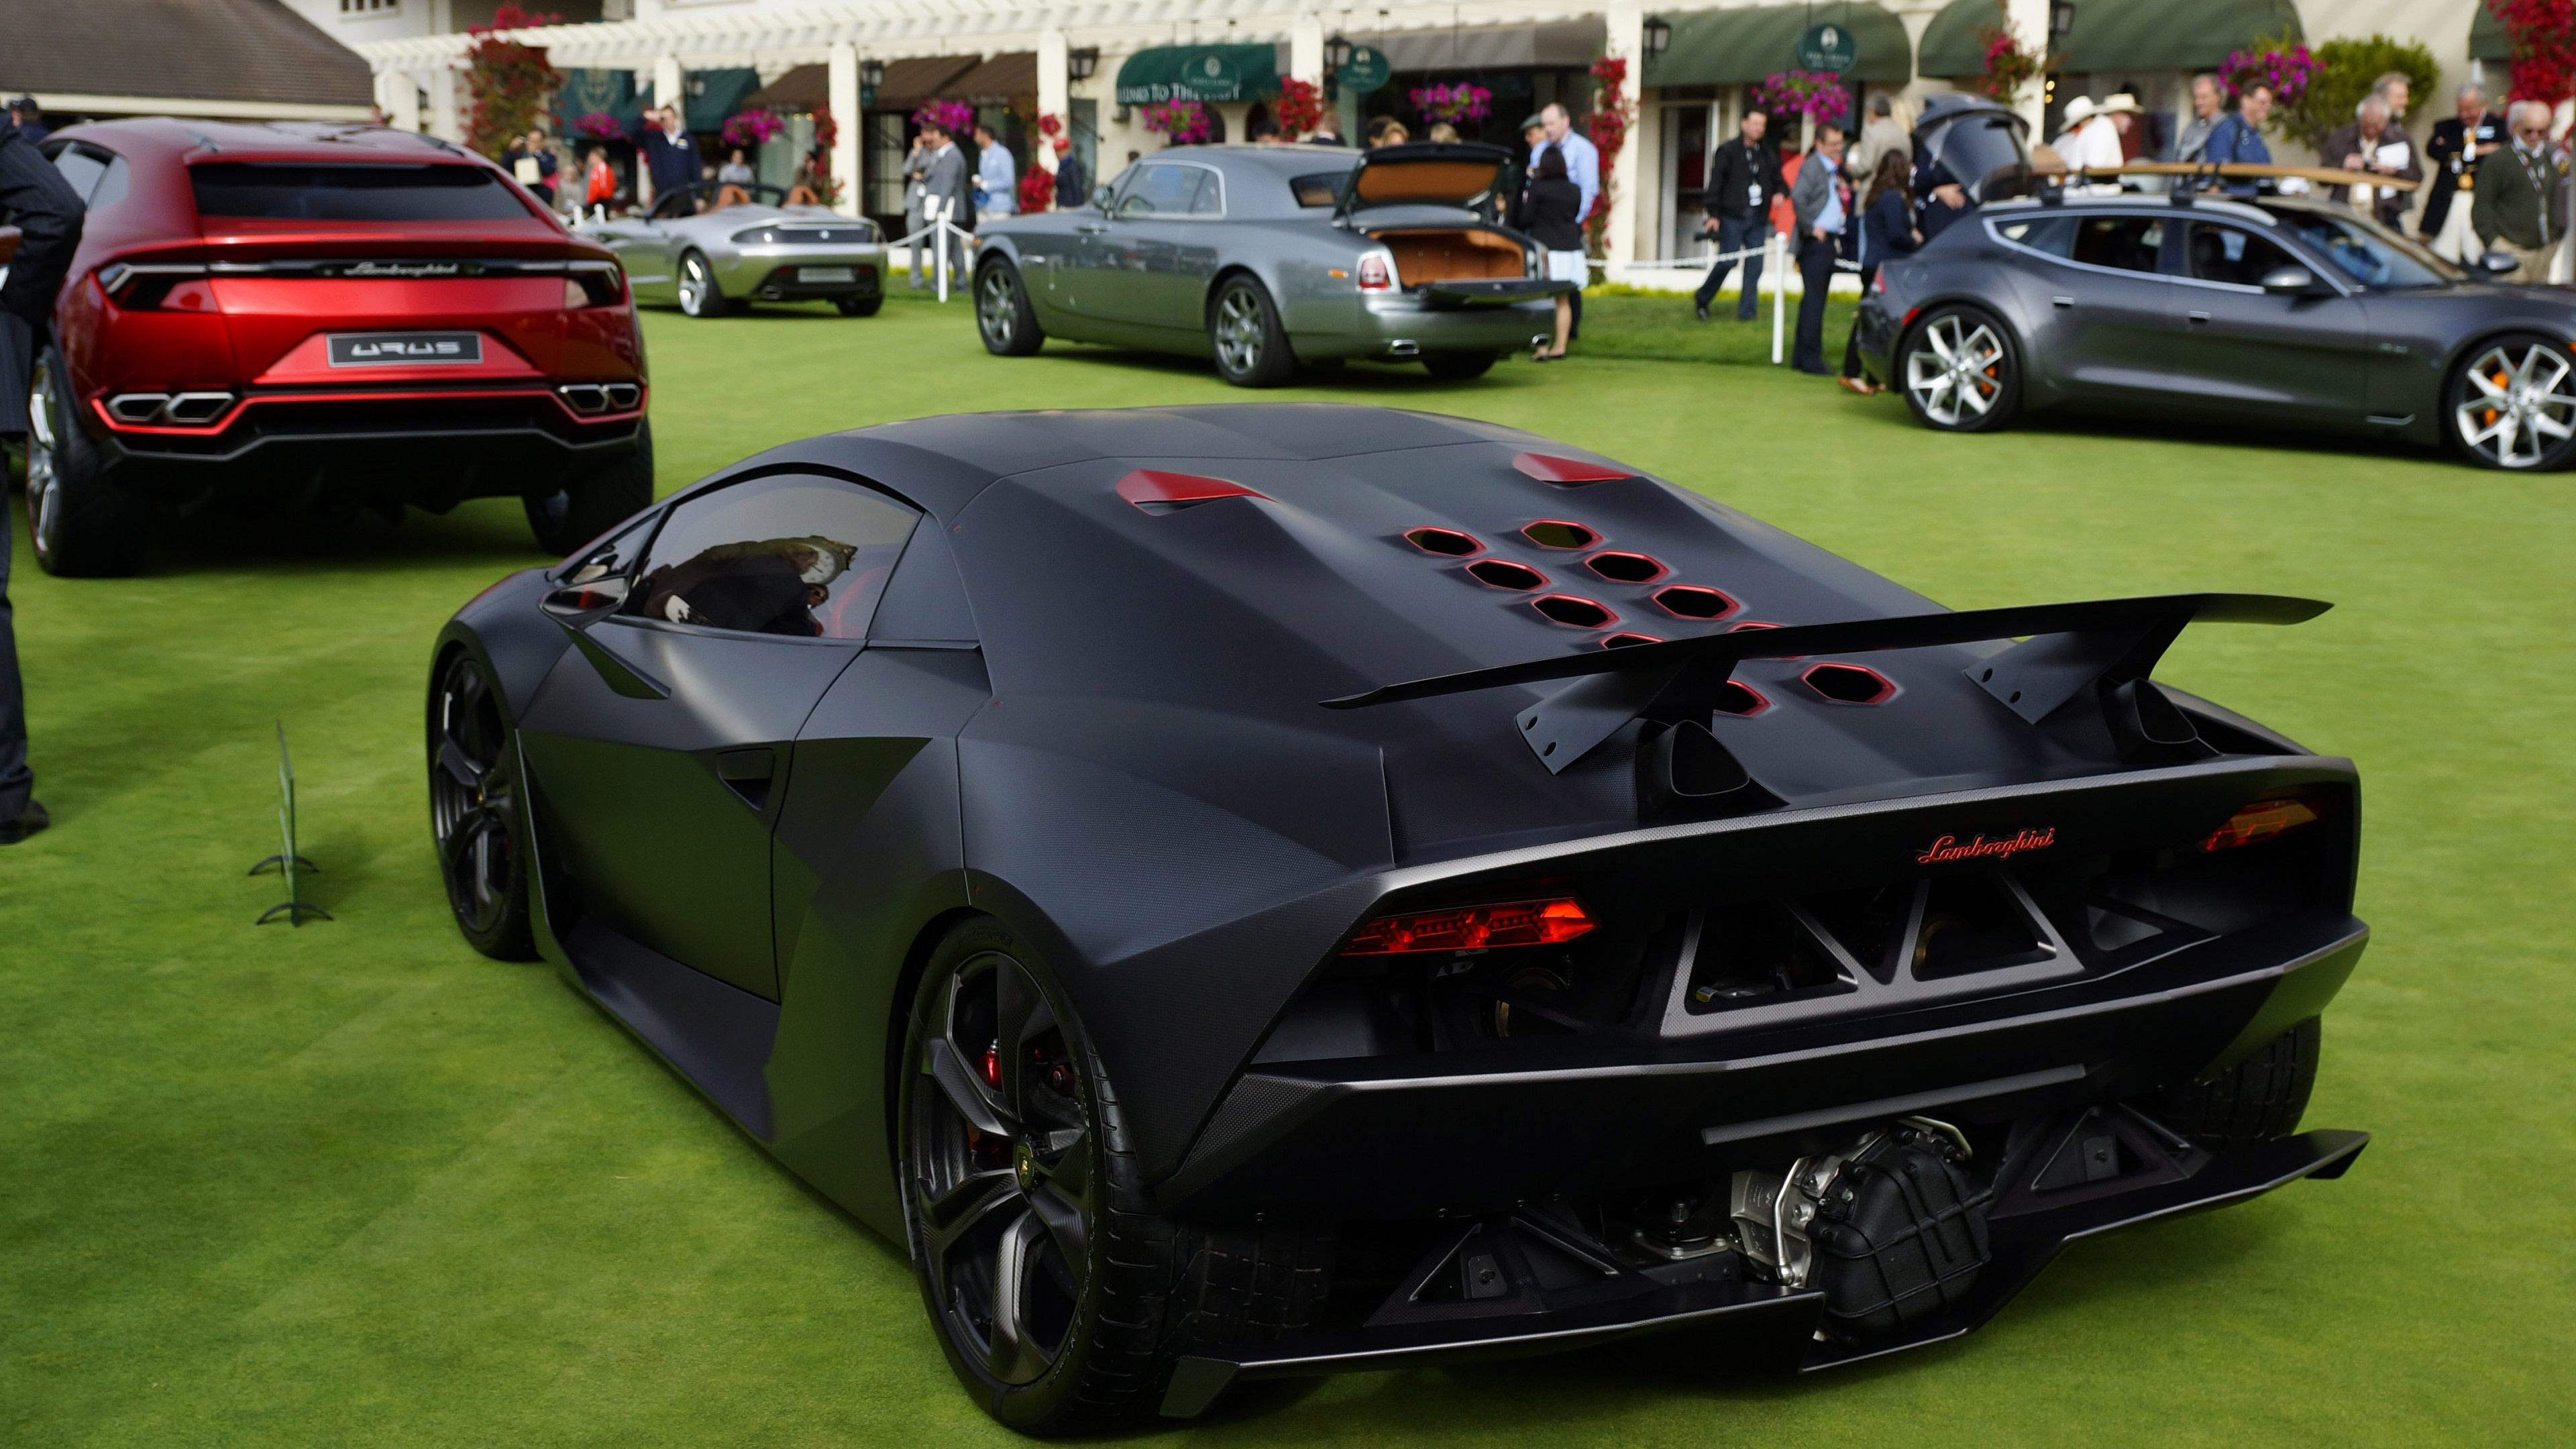 Lamborghini Sesto Elemento, Matte black back, Supercar cars wallpapers, 3840x2160 4K Desktop